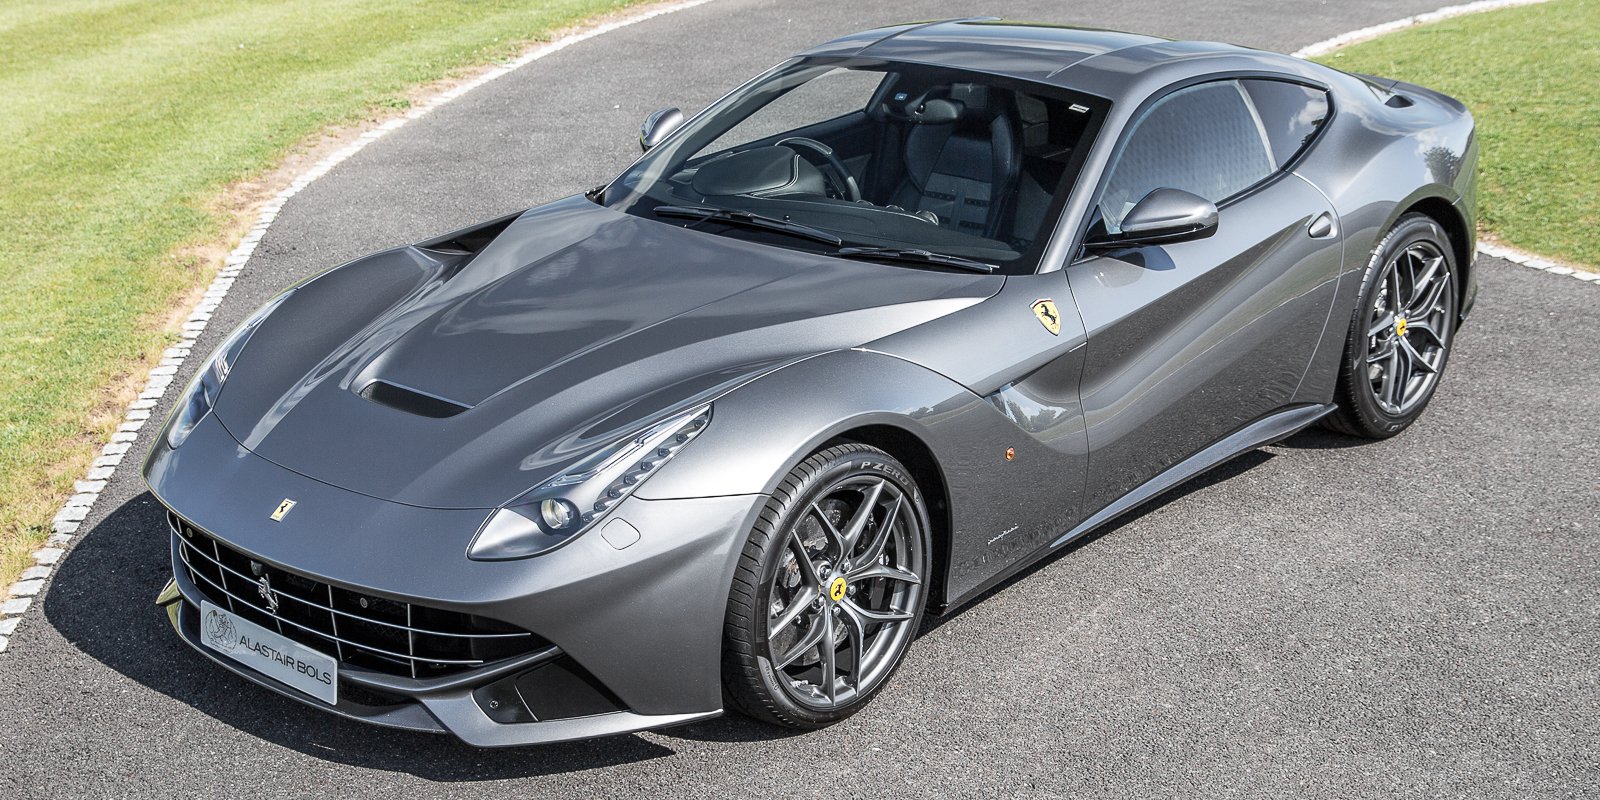 Ferrari+grigio+ferro.jpg